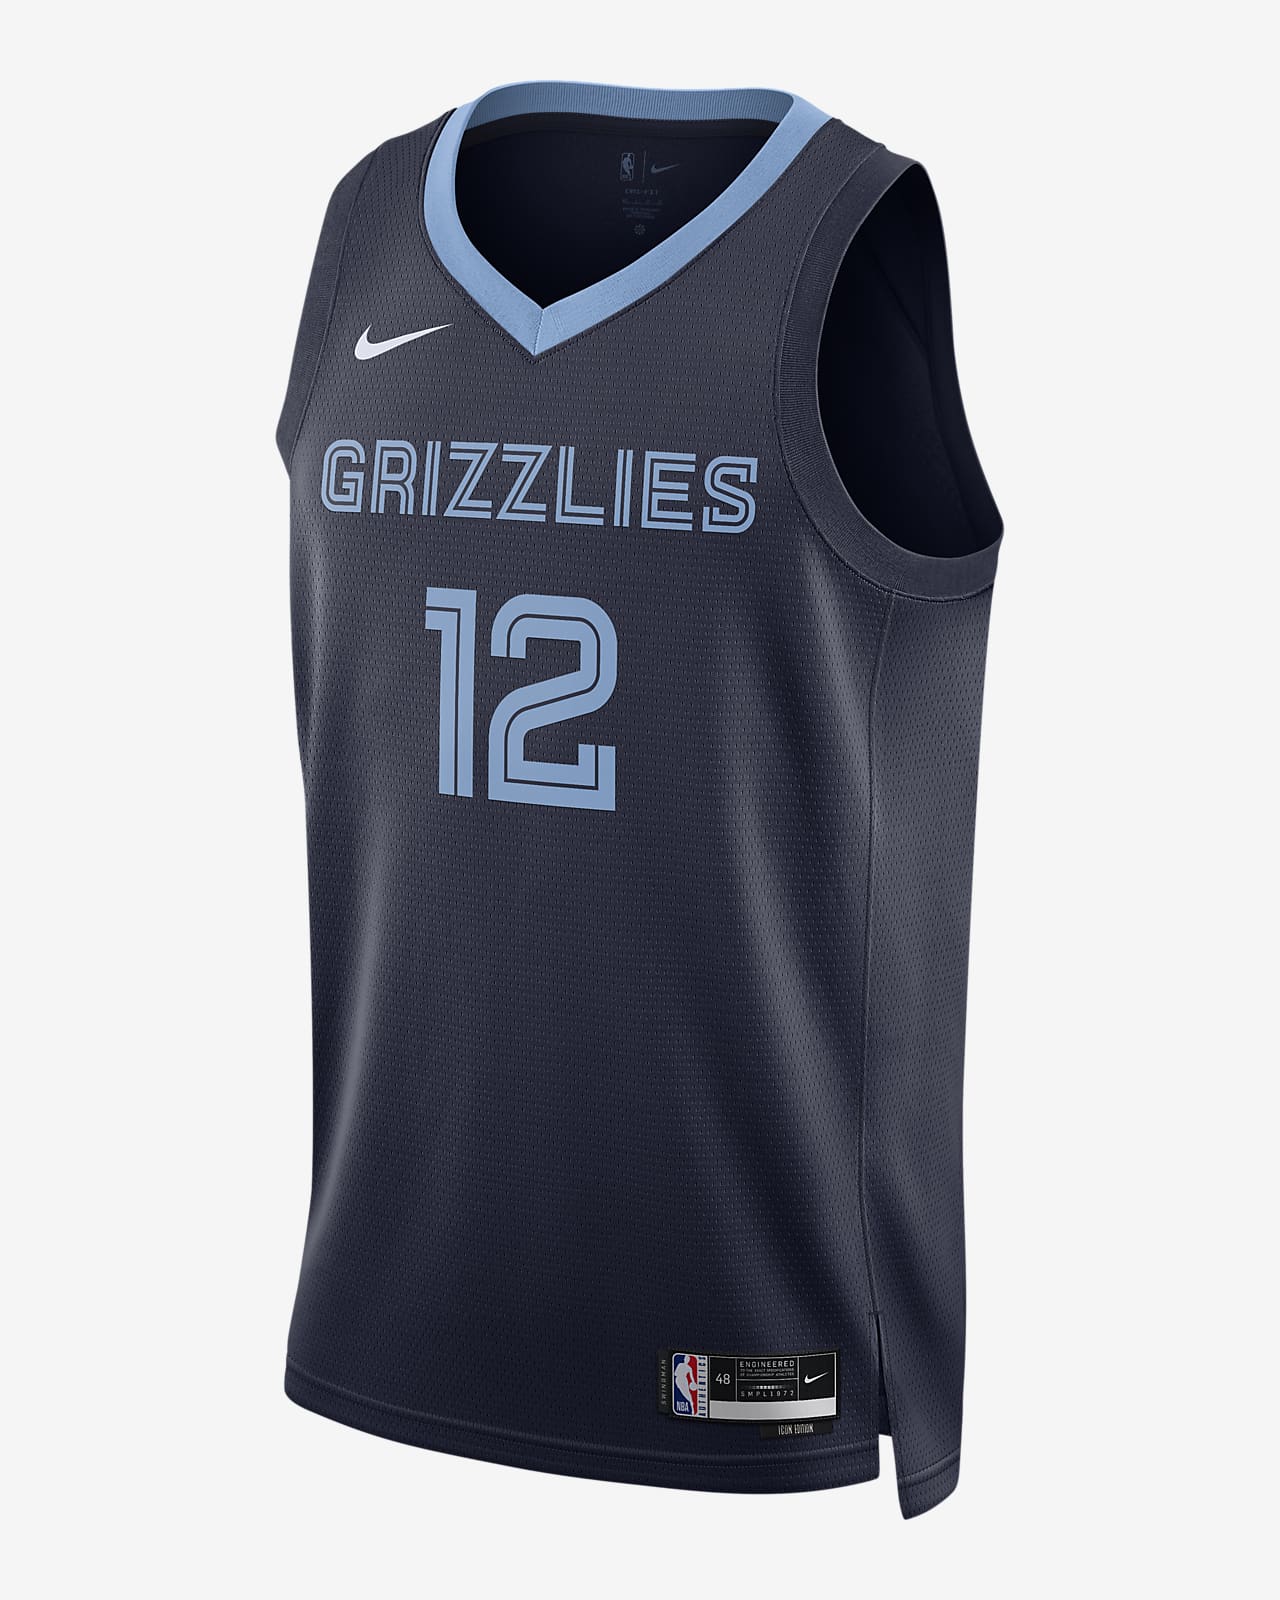 2022/23 赛季孟菲斯灰熊队 Icon Edition Nike Dri-FIT NBA Swingman Jersey 男子速干球衣